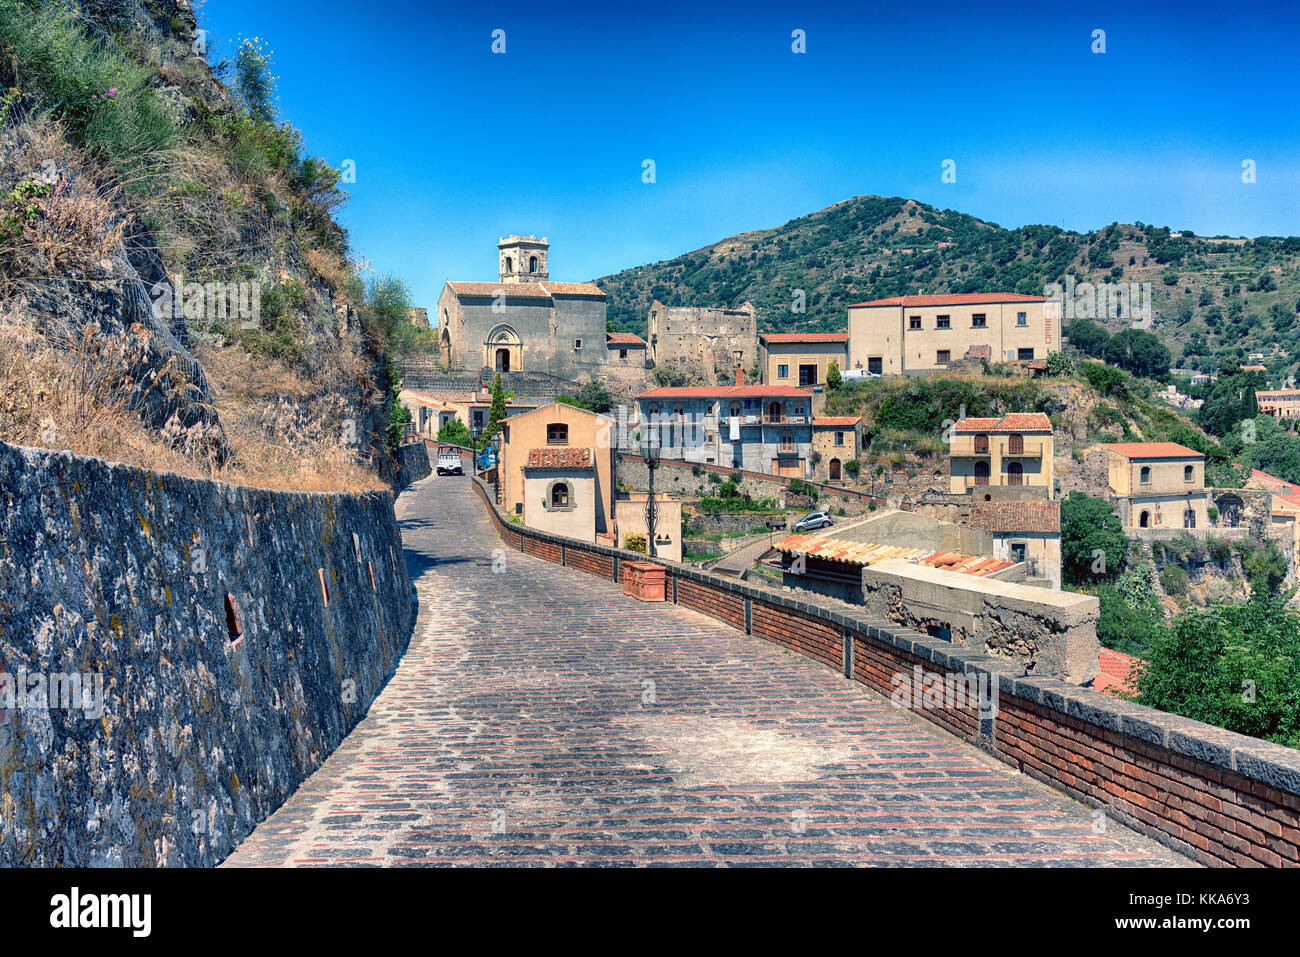 Savoca - Sicilia Mountain Village, utilizada como una ubicación para la película 'El padrino' Foto de stock